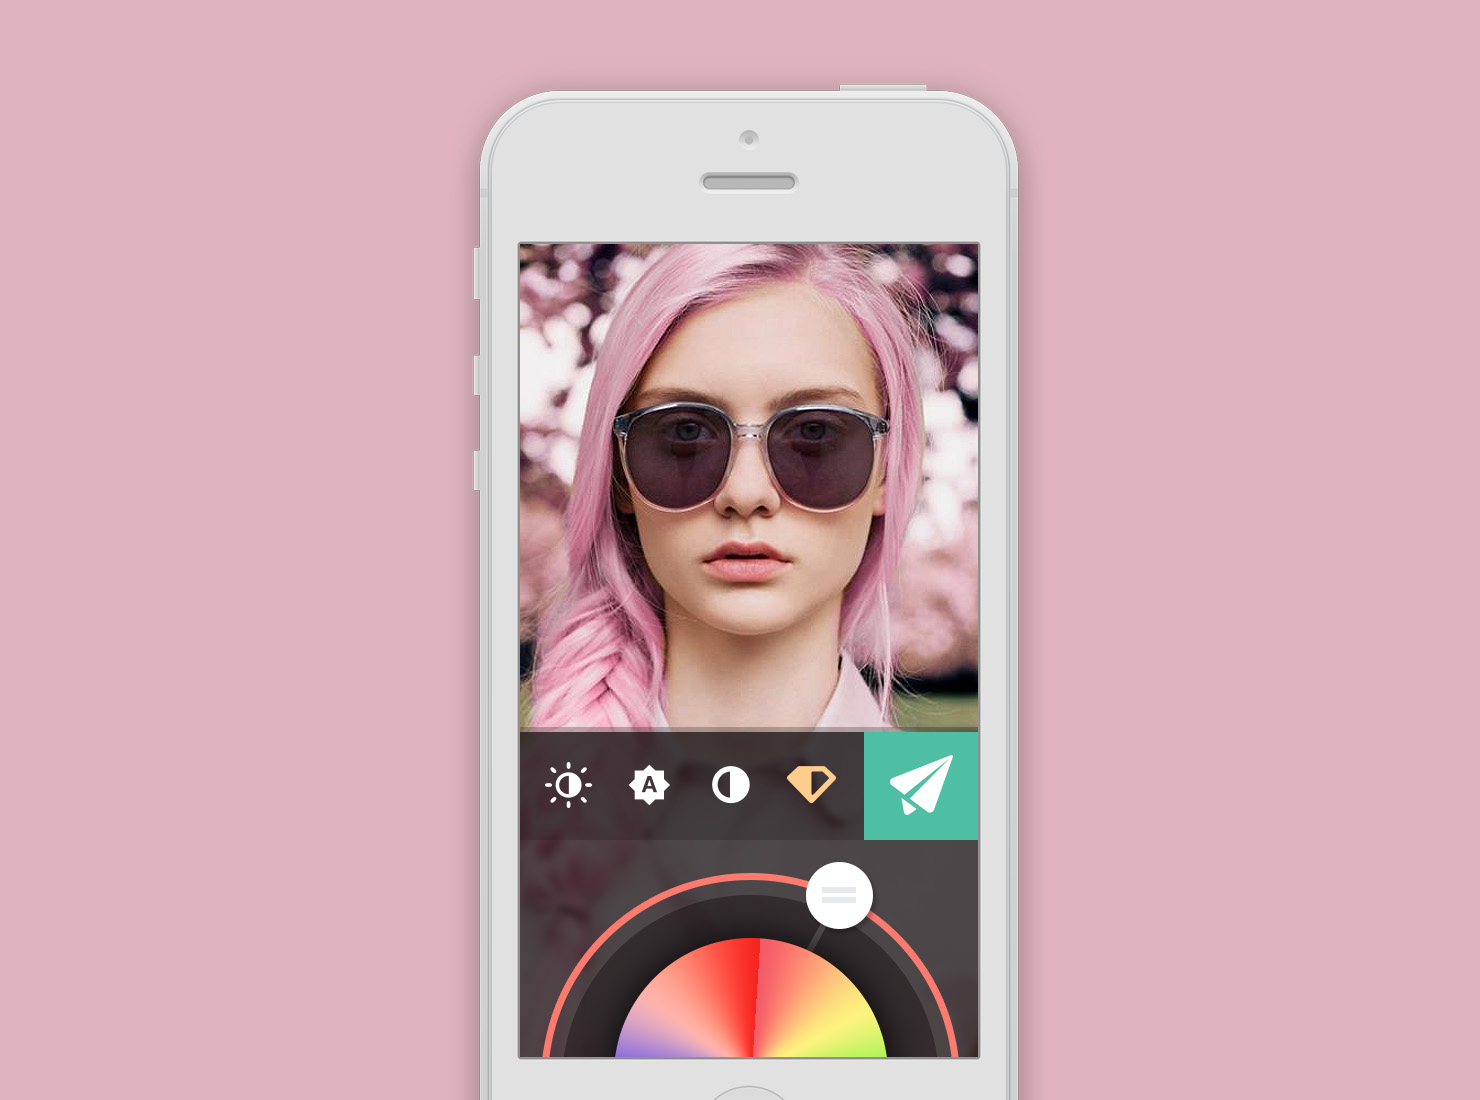 Instagram Clone UI design